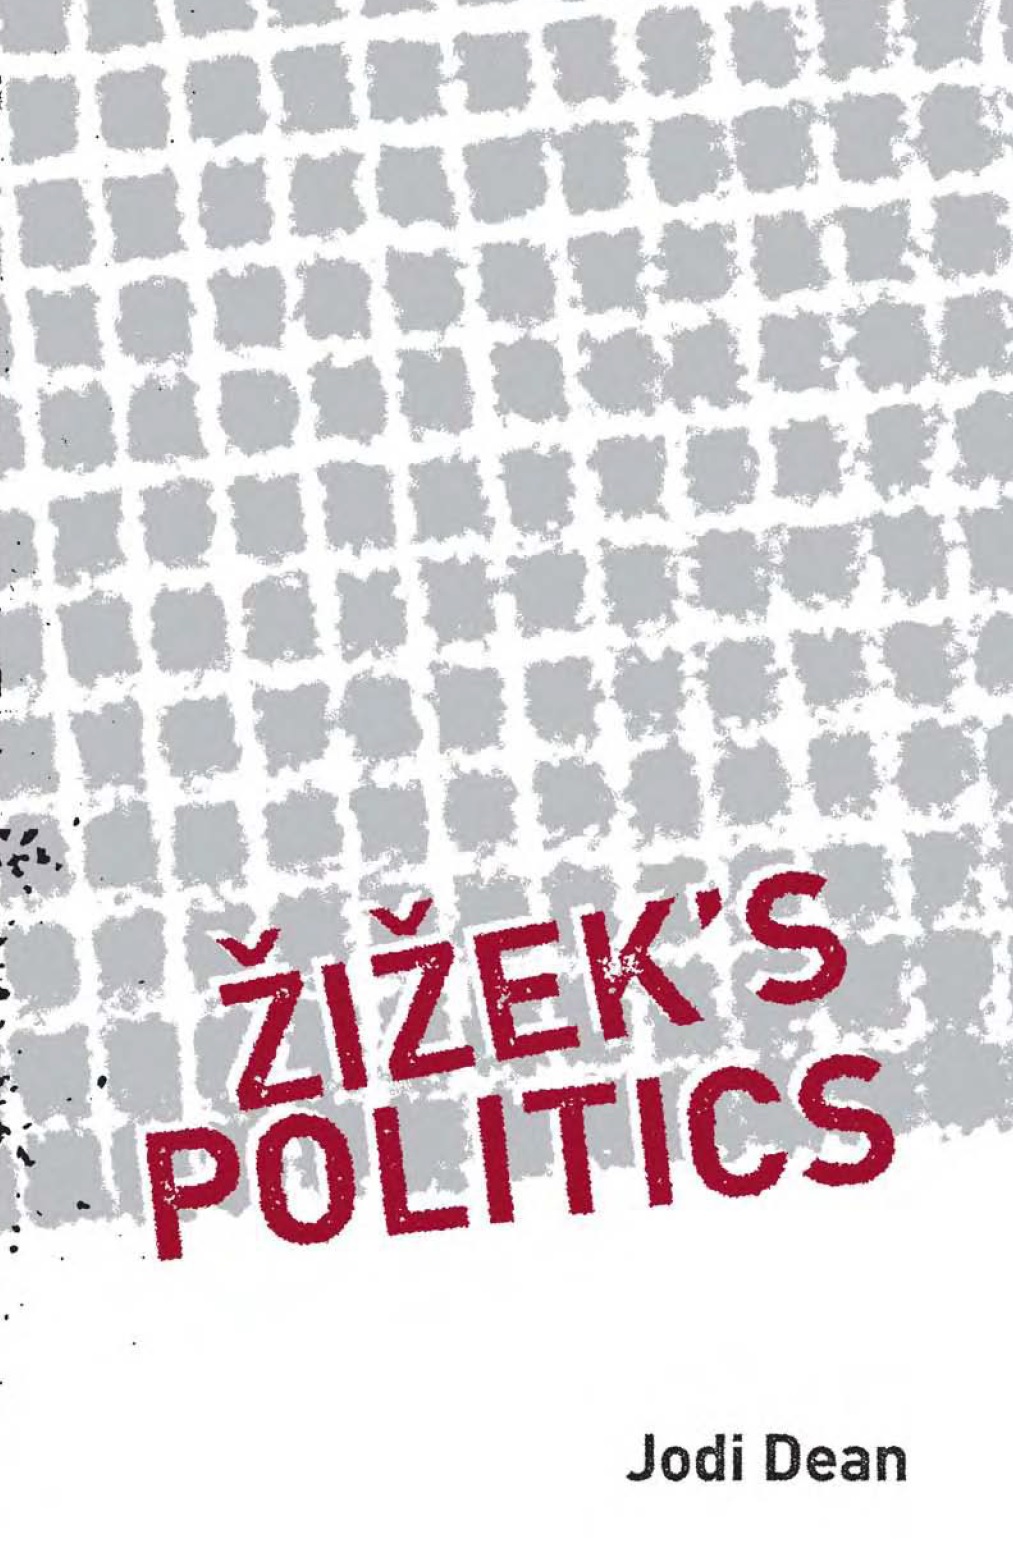 Jodi-dean-zizeks-politics-theoryleaks.jpg